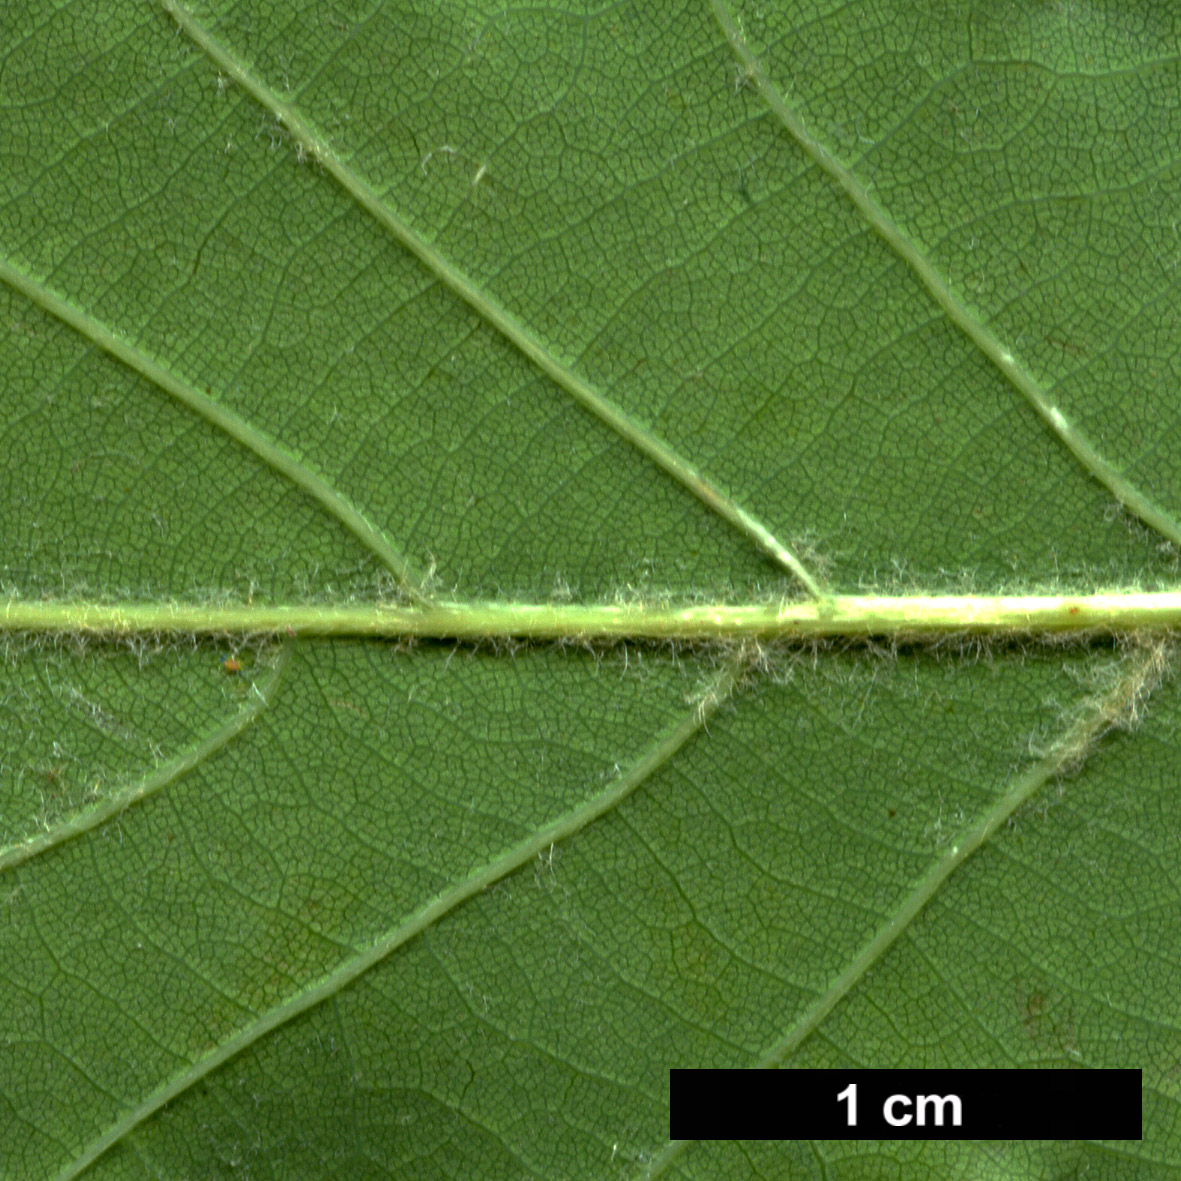 High resolution image: Family: Fagaceae - Genus: Quercus - Taxon: ×streimii - SpeciesSub: 'Kortrijk' (Q.petraea × Q.pubescens)